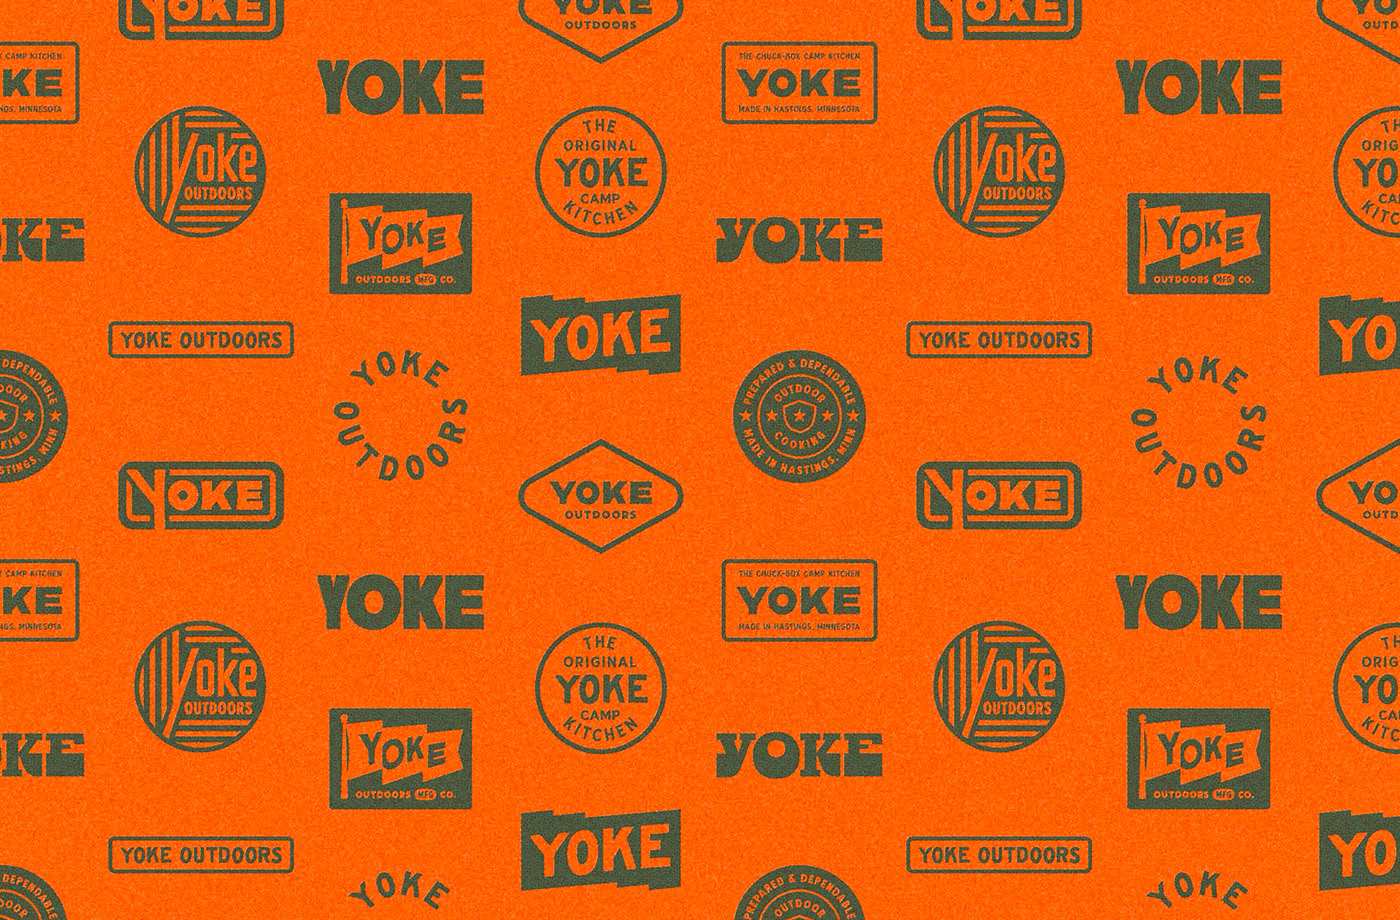 户外装备品牌Yoke炫酷标识和包装设计